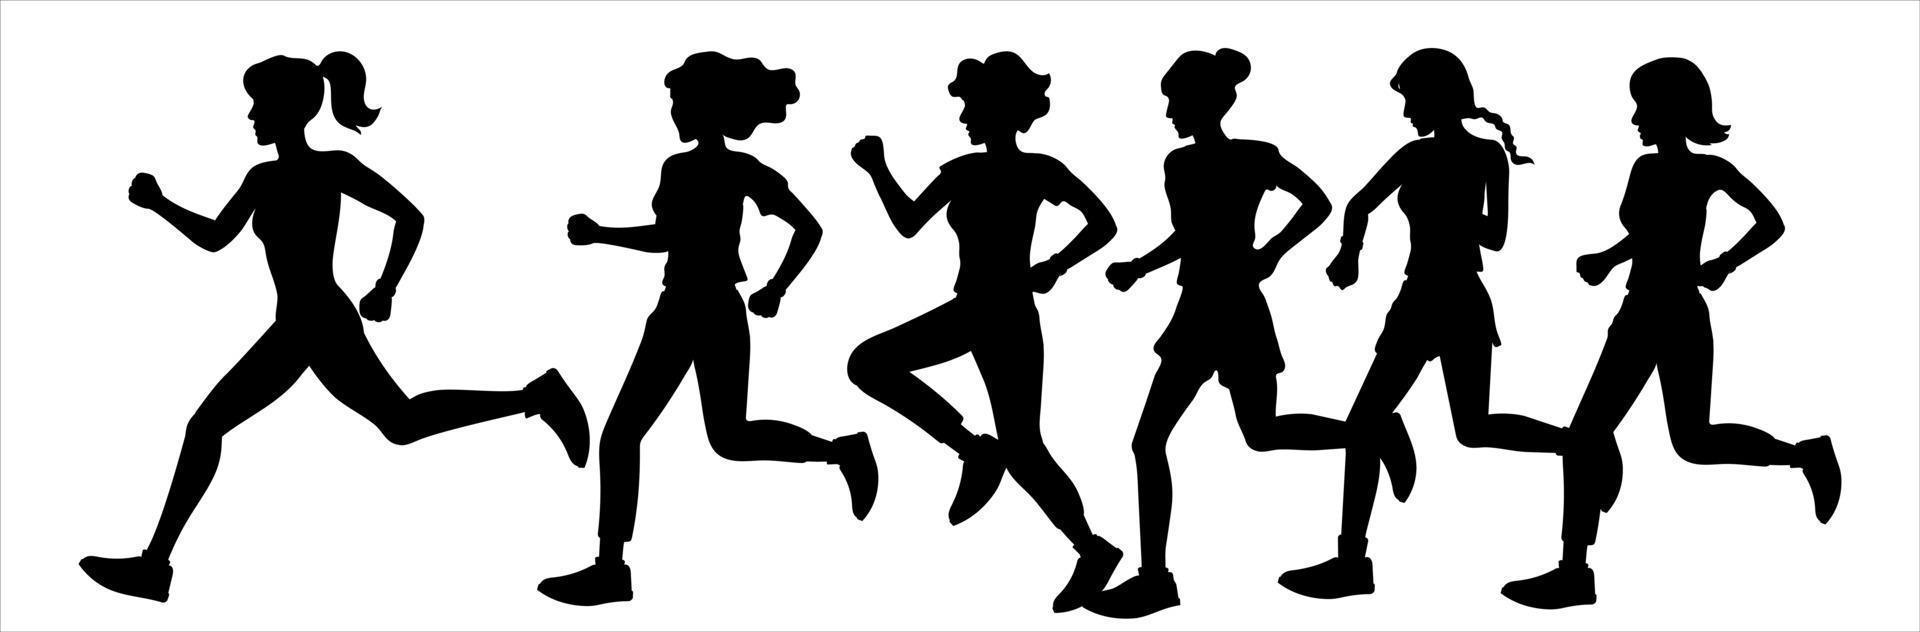 las niñas y las mujeres corren en un maratón, trotando. siluetas negras sobre un fondo blanco. Ilustración de deportes y estilo de vida saludable. vector